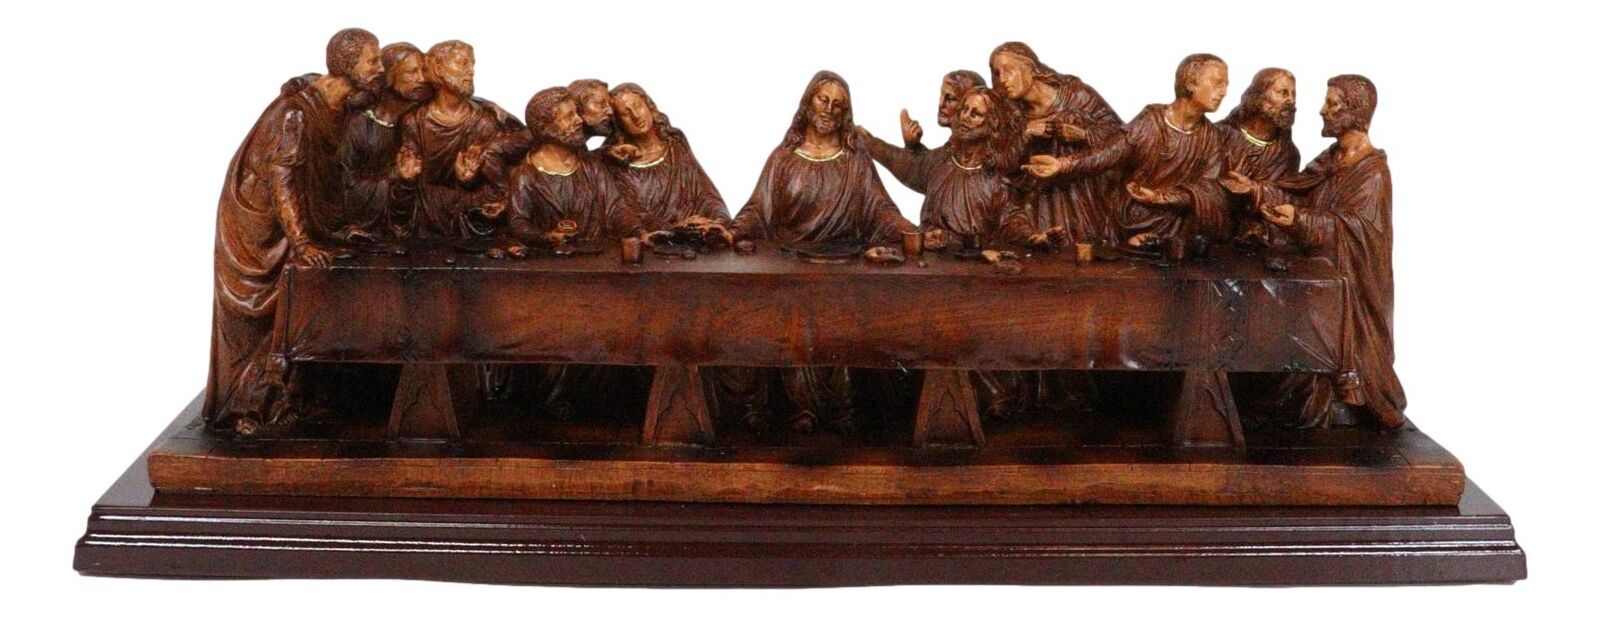 Leonardo Da Vinci The Last Supper Jesus And Disciples Faux Wooden Figurine 14